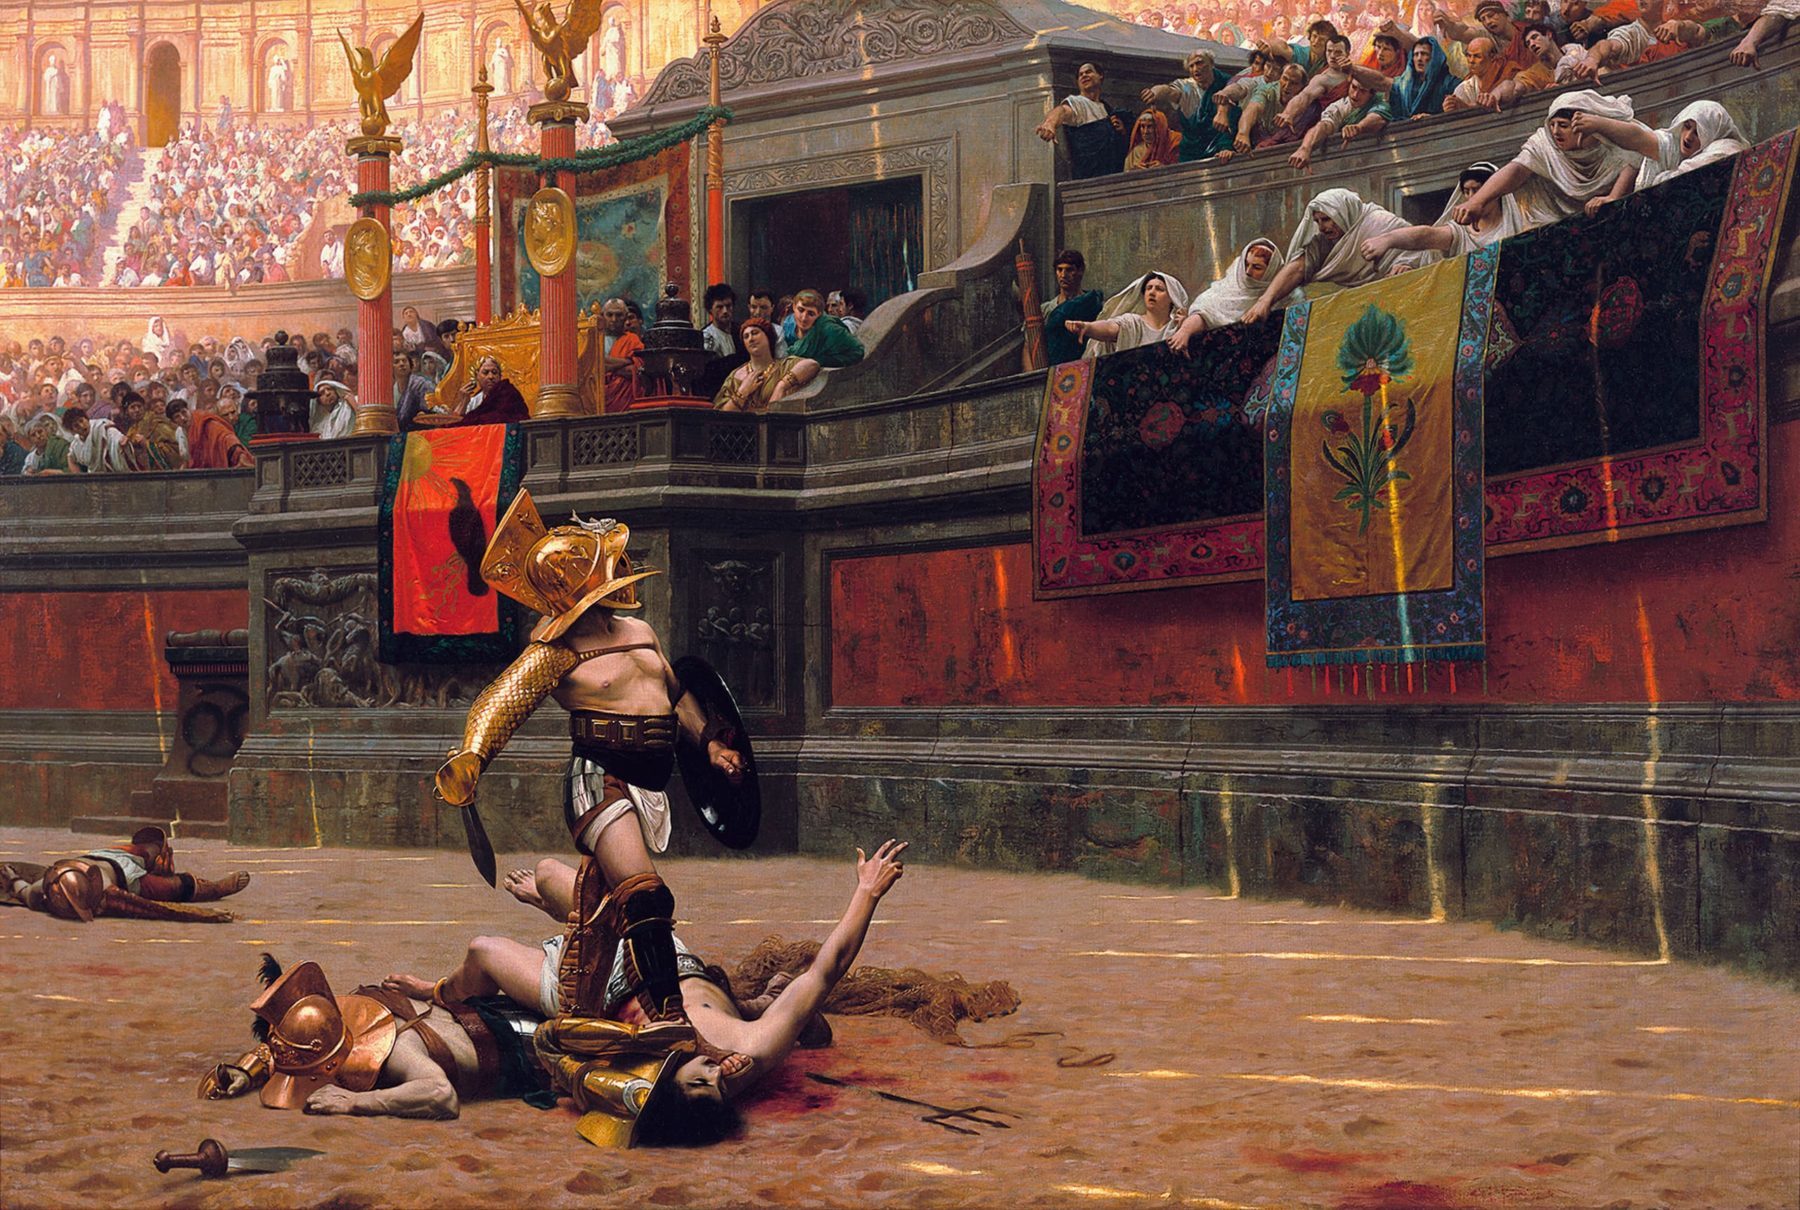 Gemälde von 1872 zeigt eine Arena mit Kämpfern